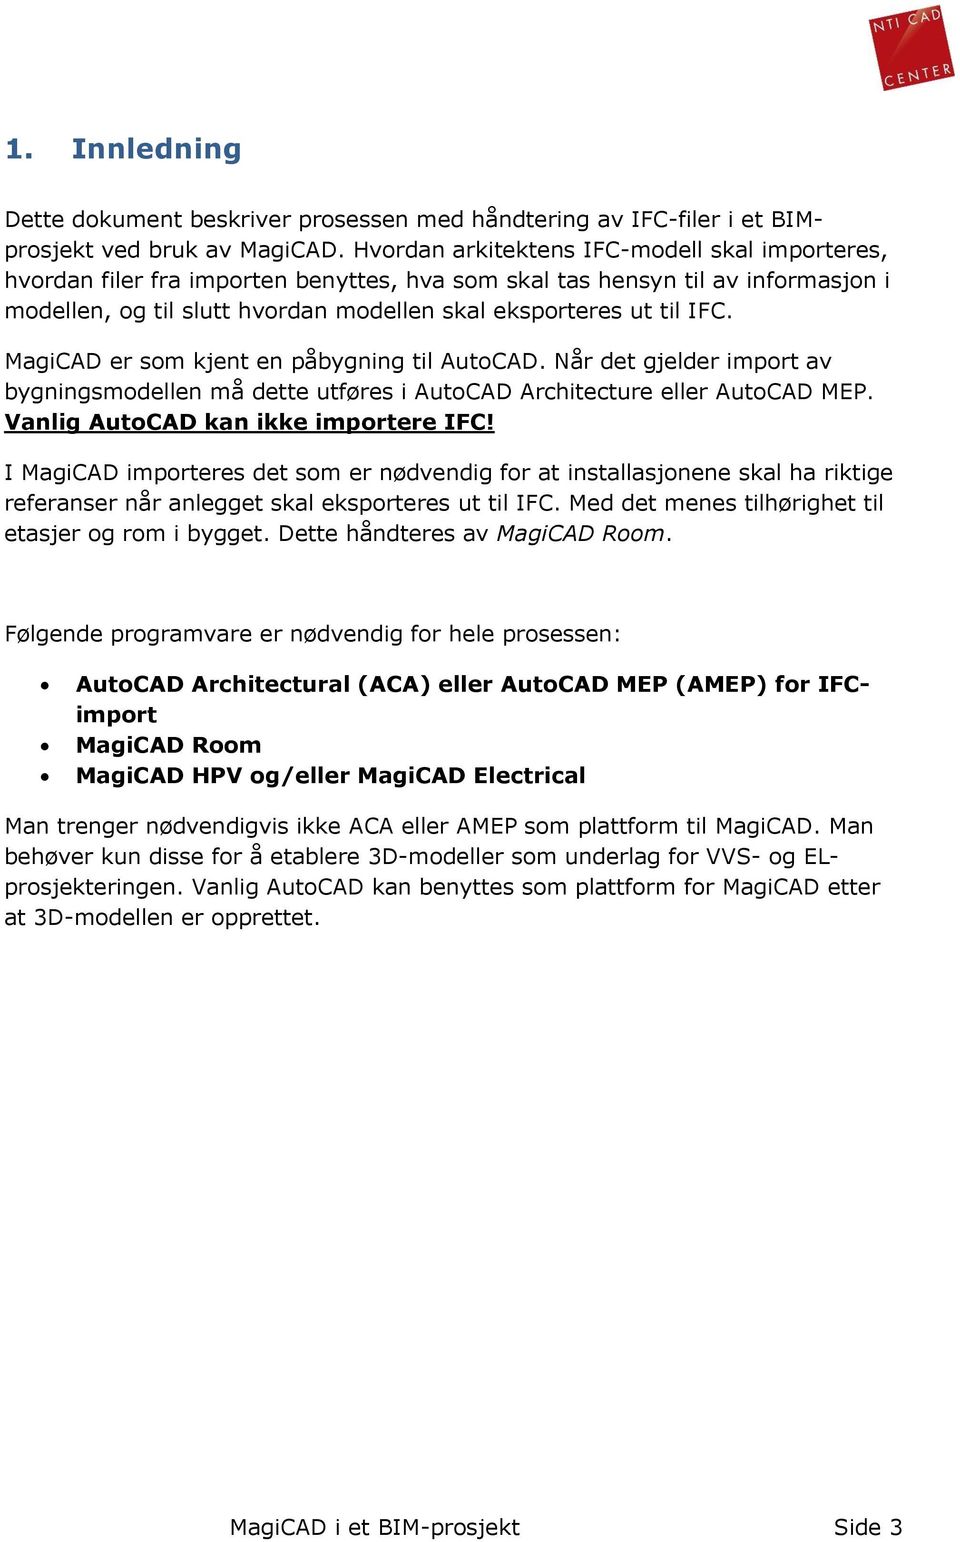 MagiCAD er som kjent en påbygning til AutoCAD. Når det gjelder import av bygningsmodellen må dette utføres i AutoCAD Architecture eller AutoCAD MEP. Vanlig AutoCAD kan ikke importere IFC!